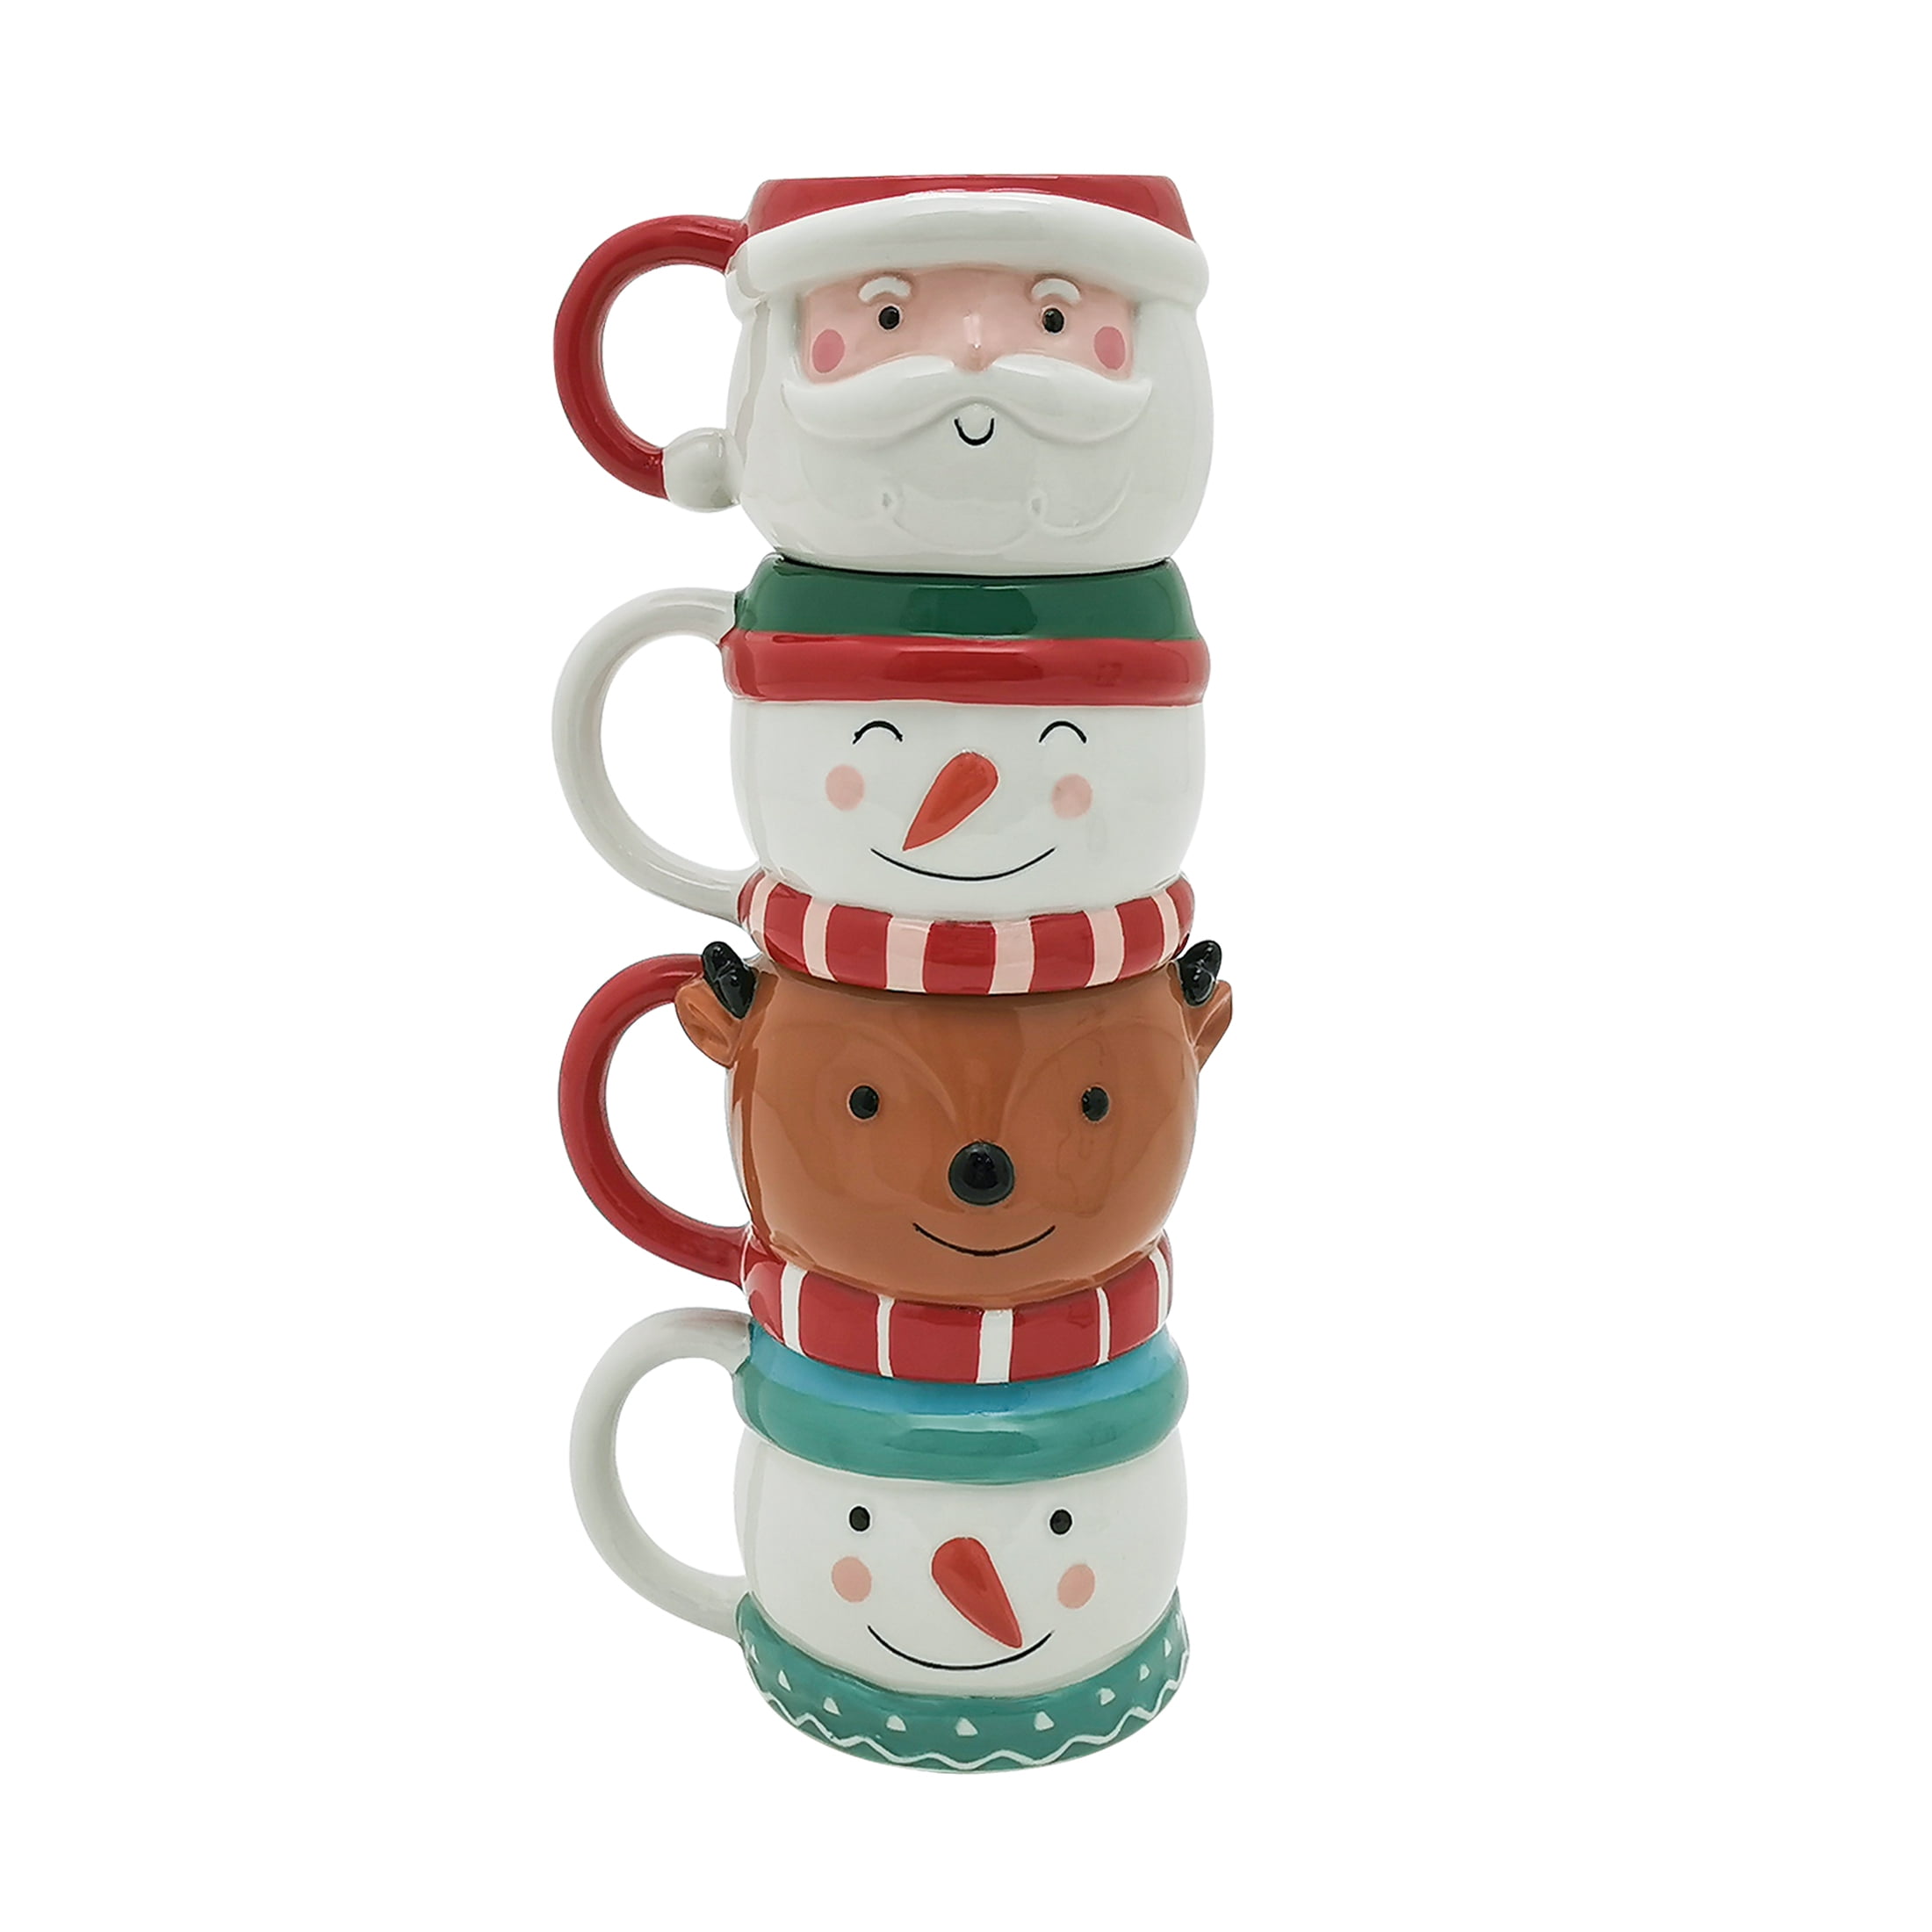 Hallmark Snowman Stackable Set of 2 Coffee Mugs Tea Cups Holiday Christmas  Theme